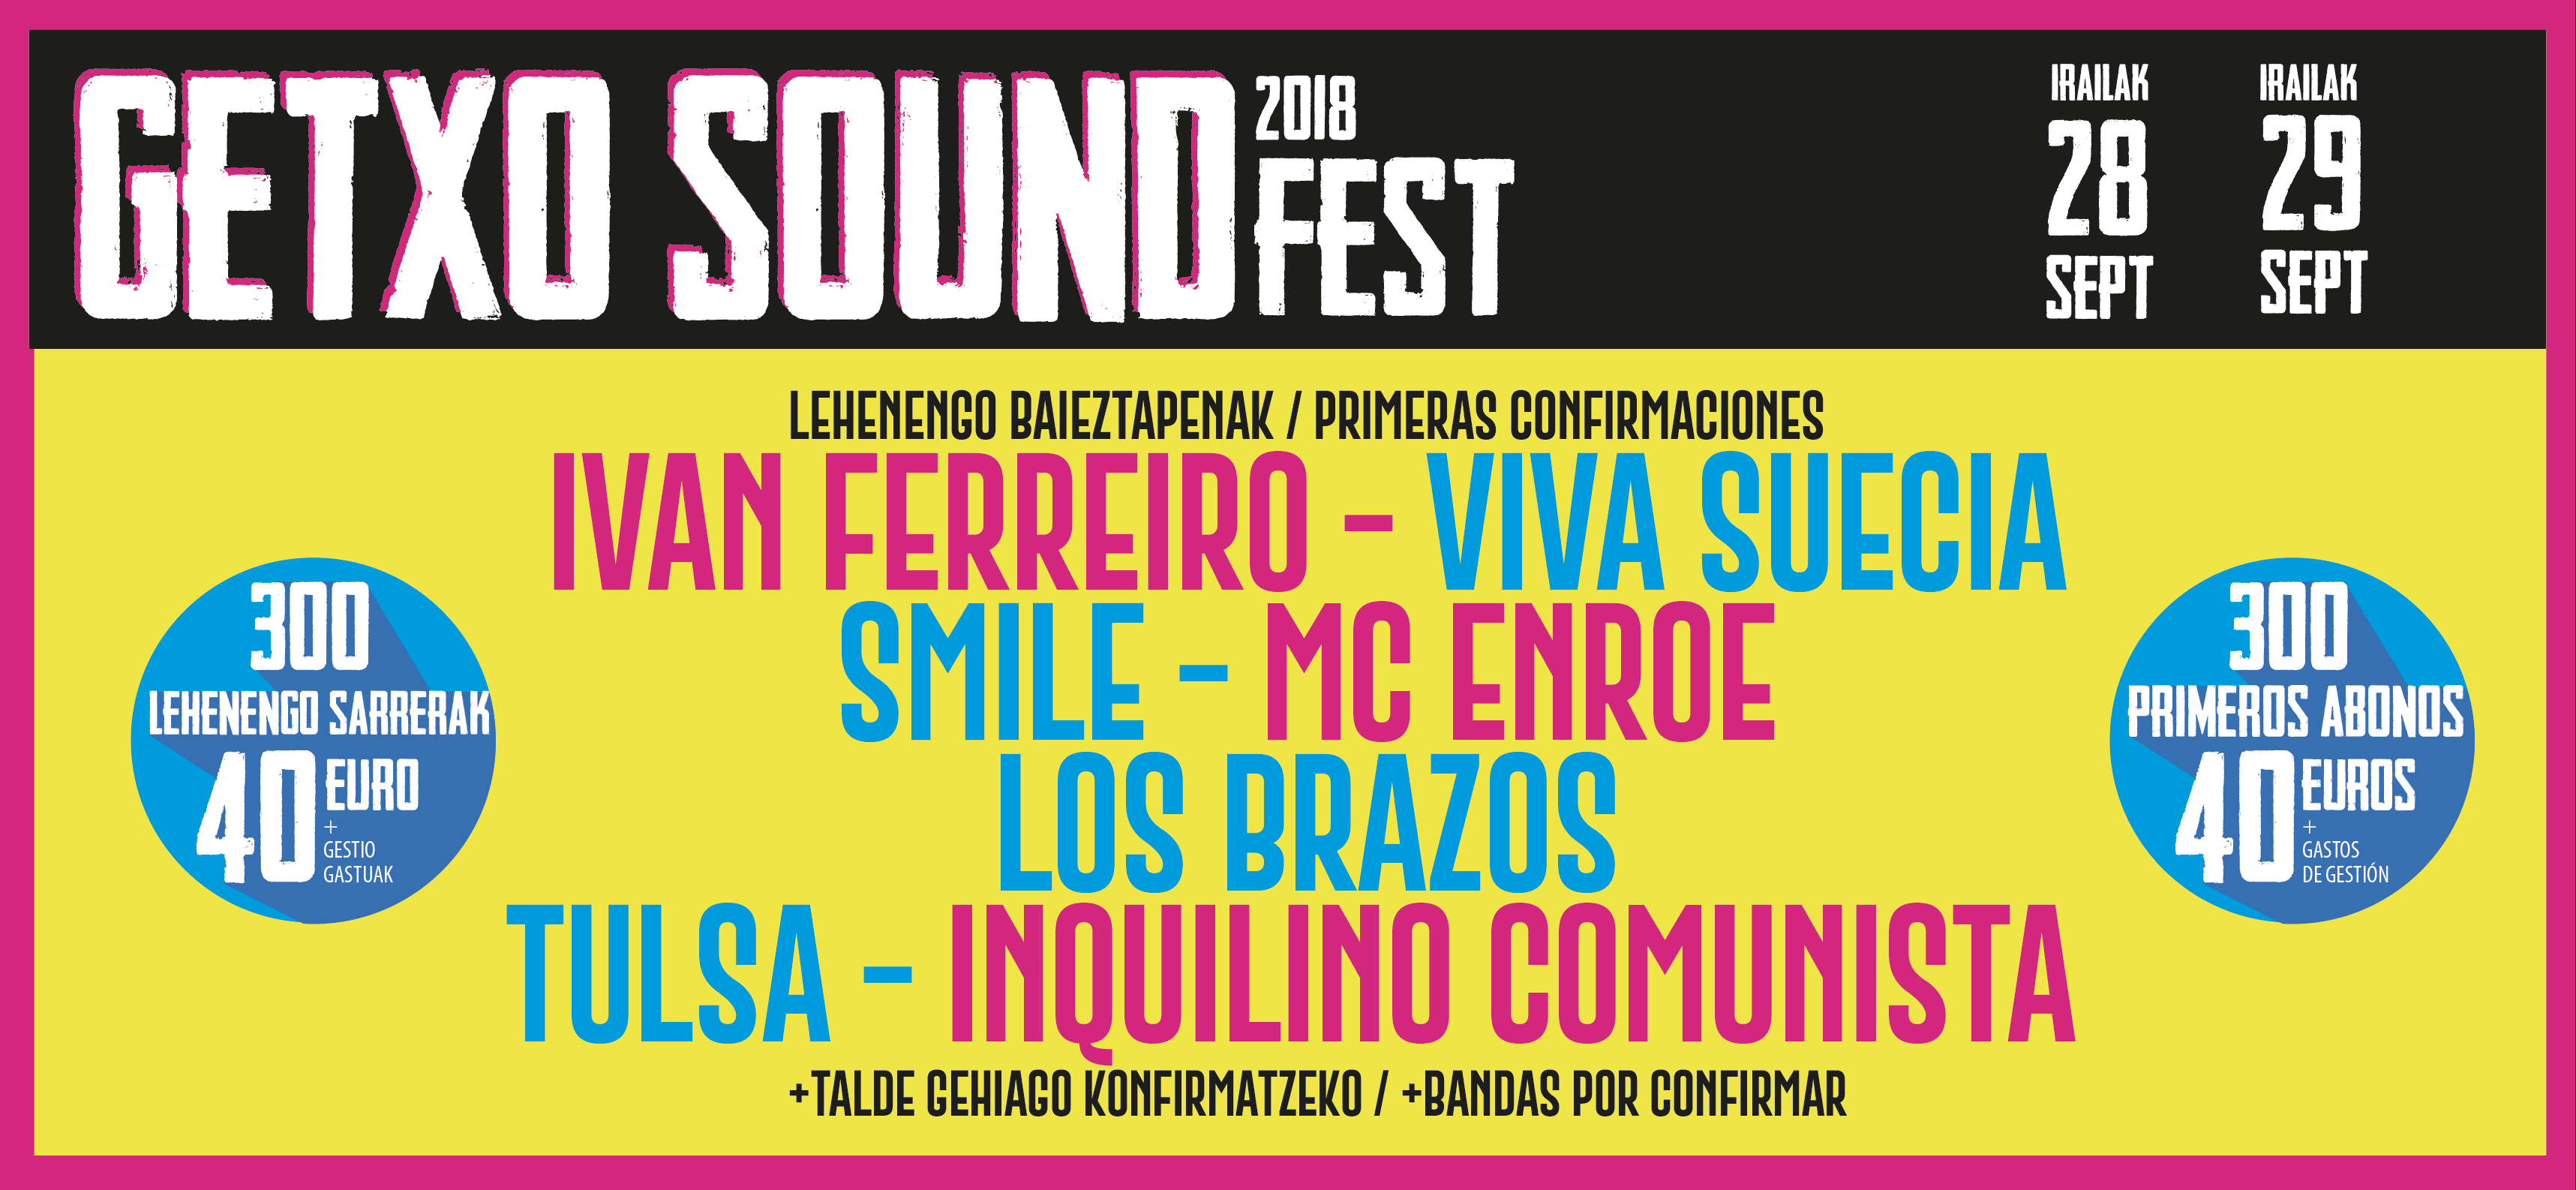 Se presenta el cartel de Getxo Sound Fest